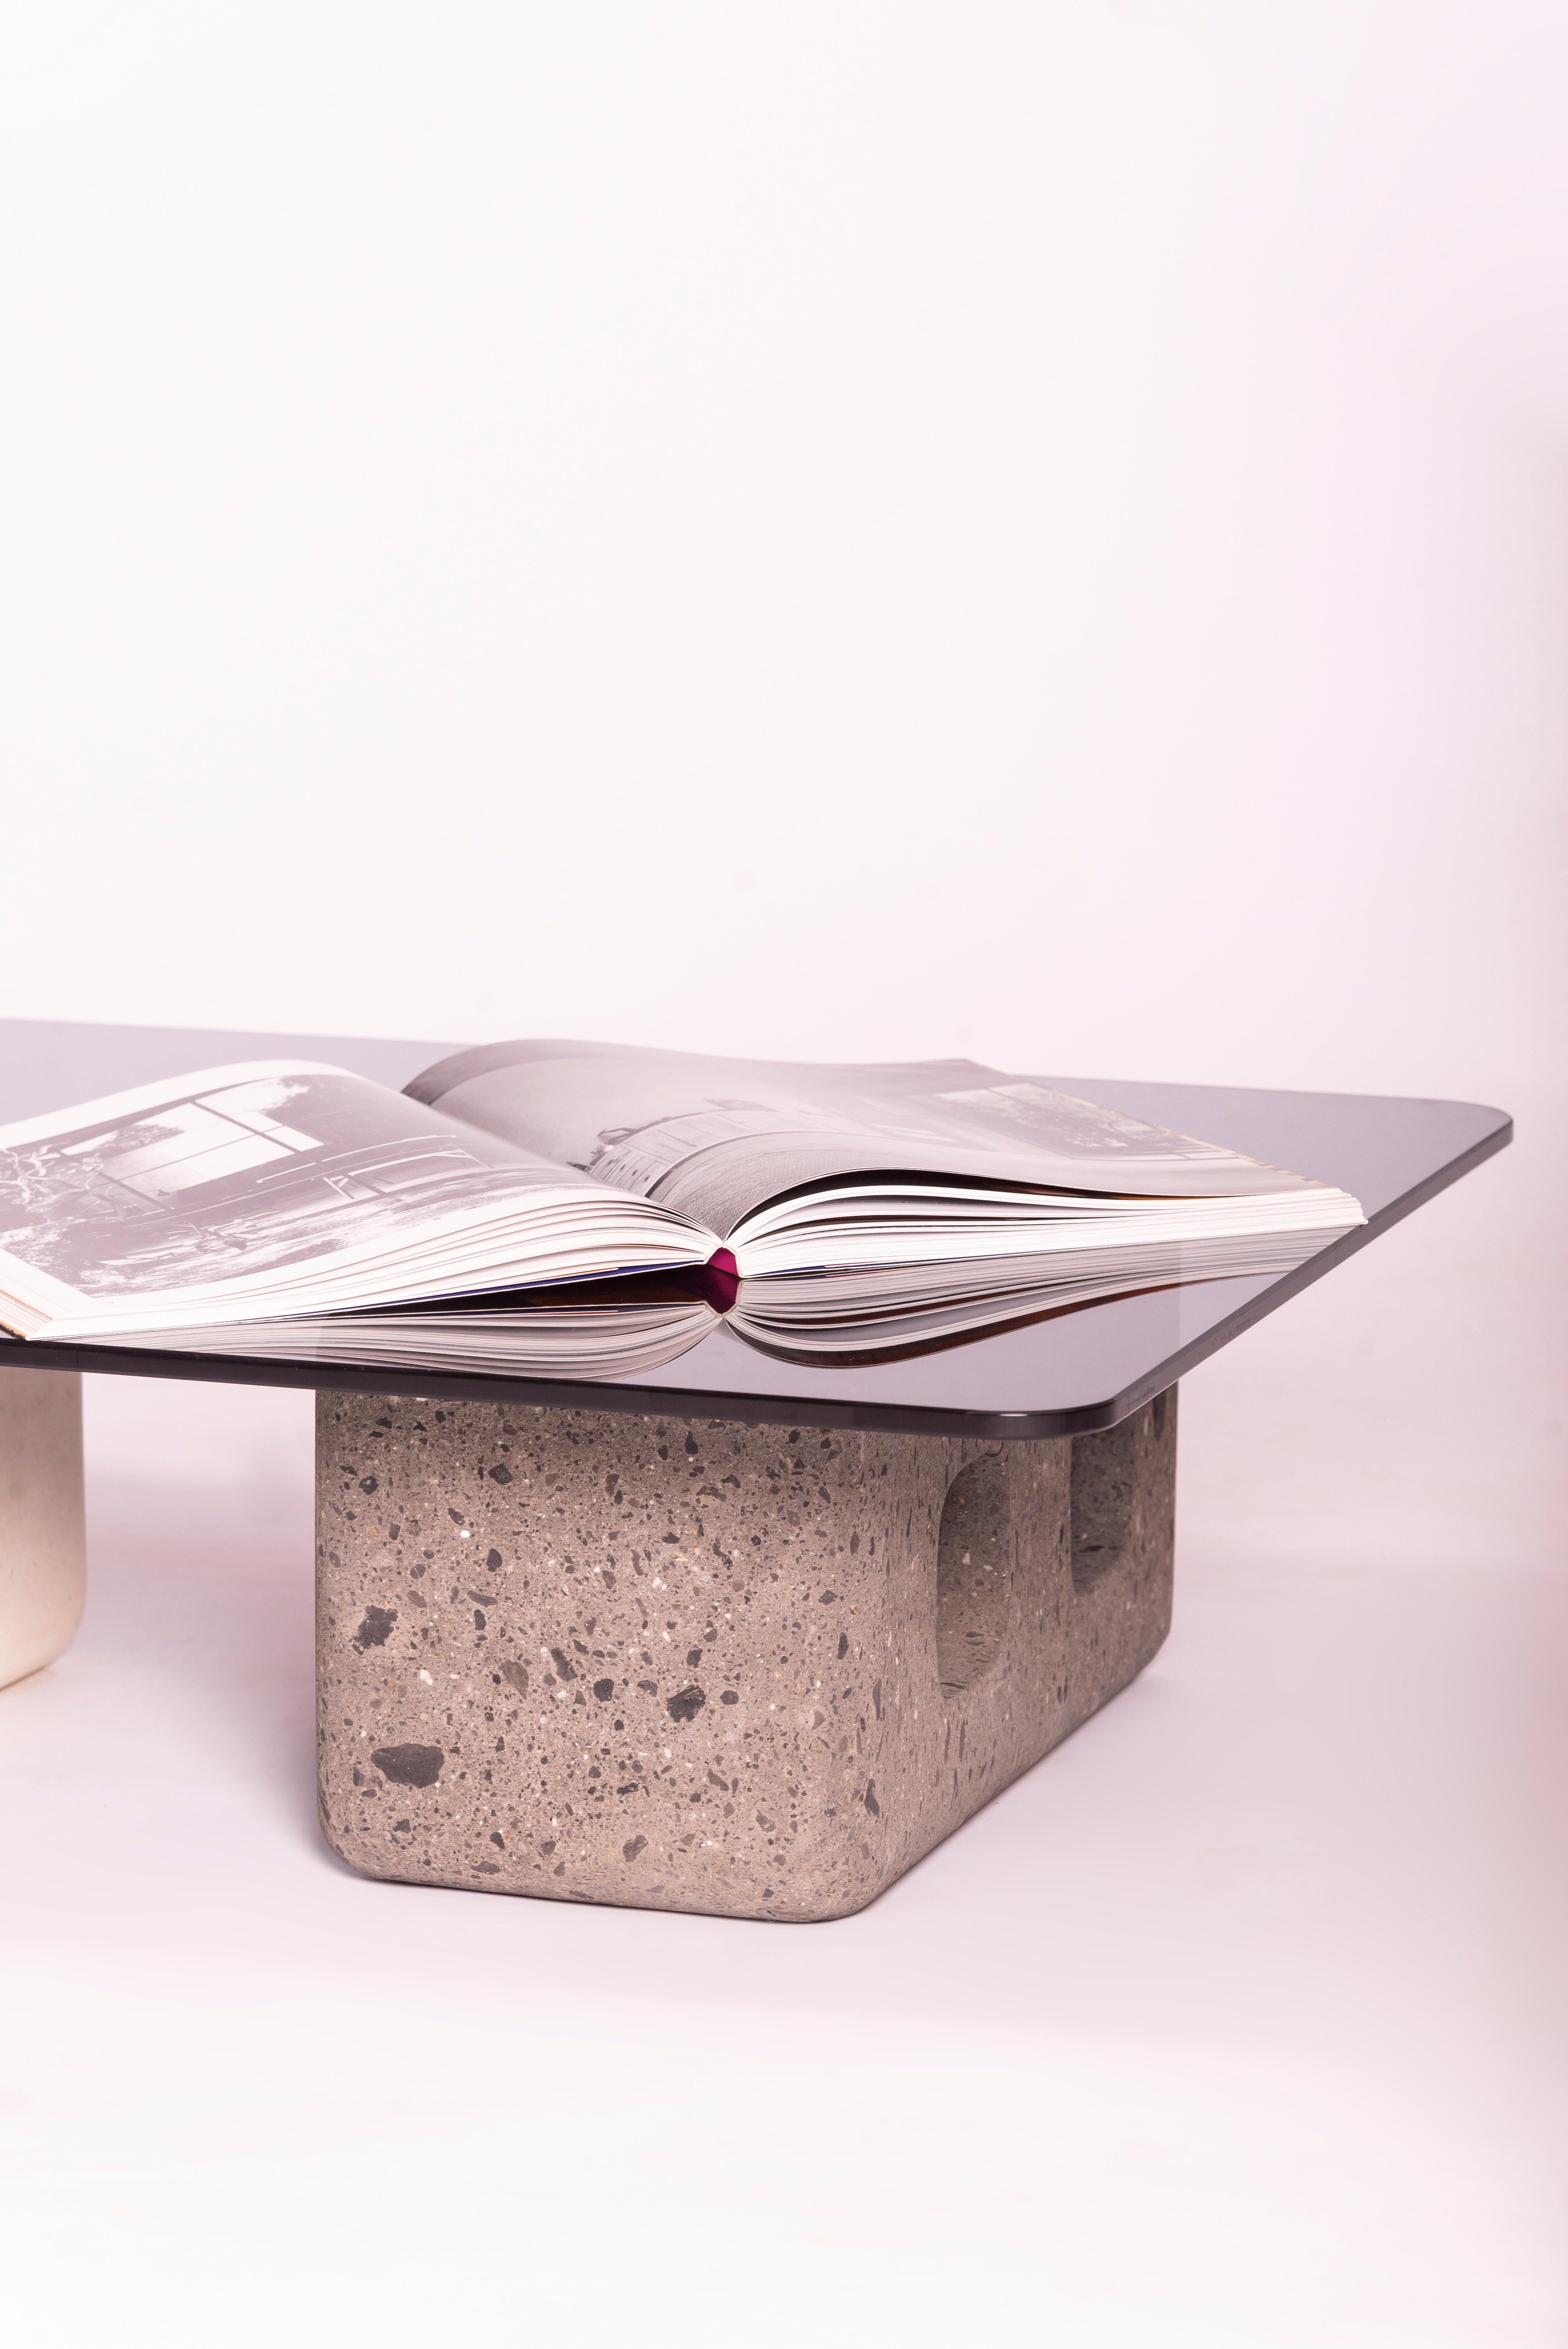 La table basse Blocks a été inspirée par le contexte de la construction au Mexique, une réinterprétation d'une authentique table multitâche par des ouvriers mexicains : des blocs moulés et un plateau multi-matériaux. Ces pièces sont sculptées à la